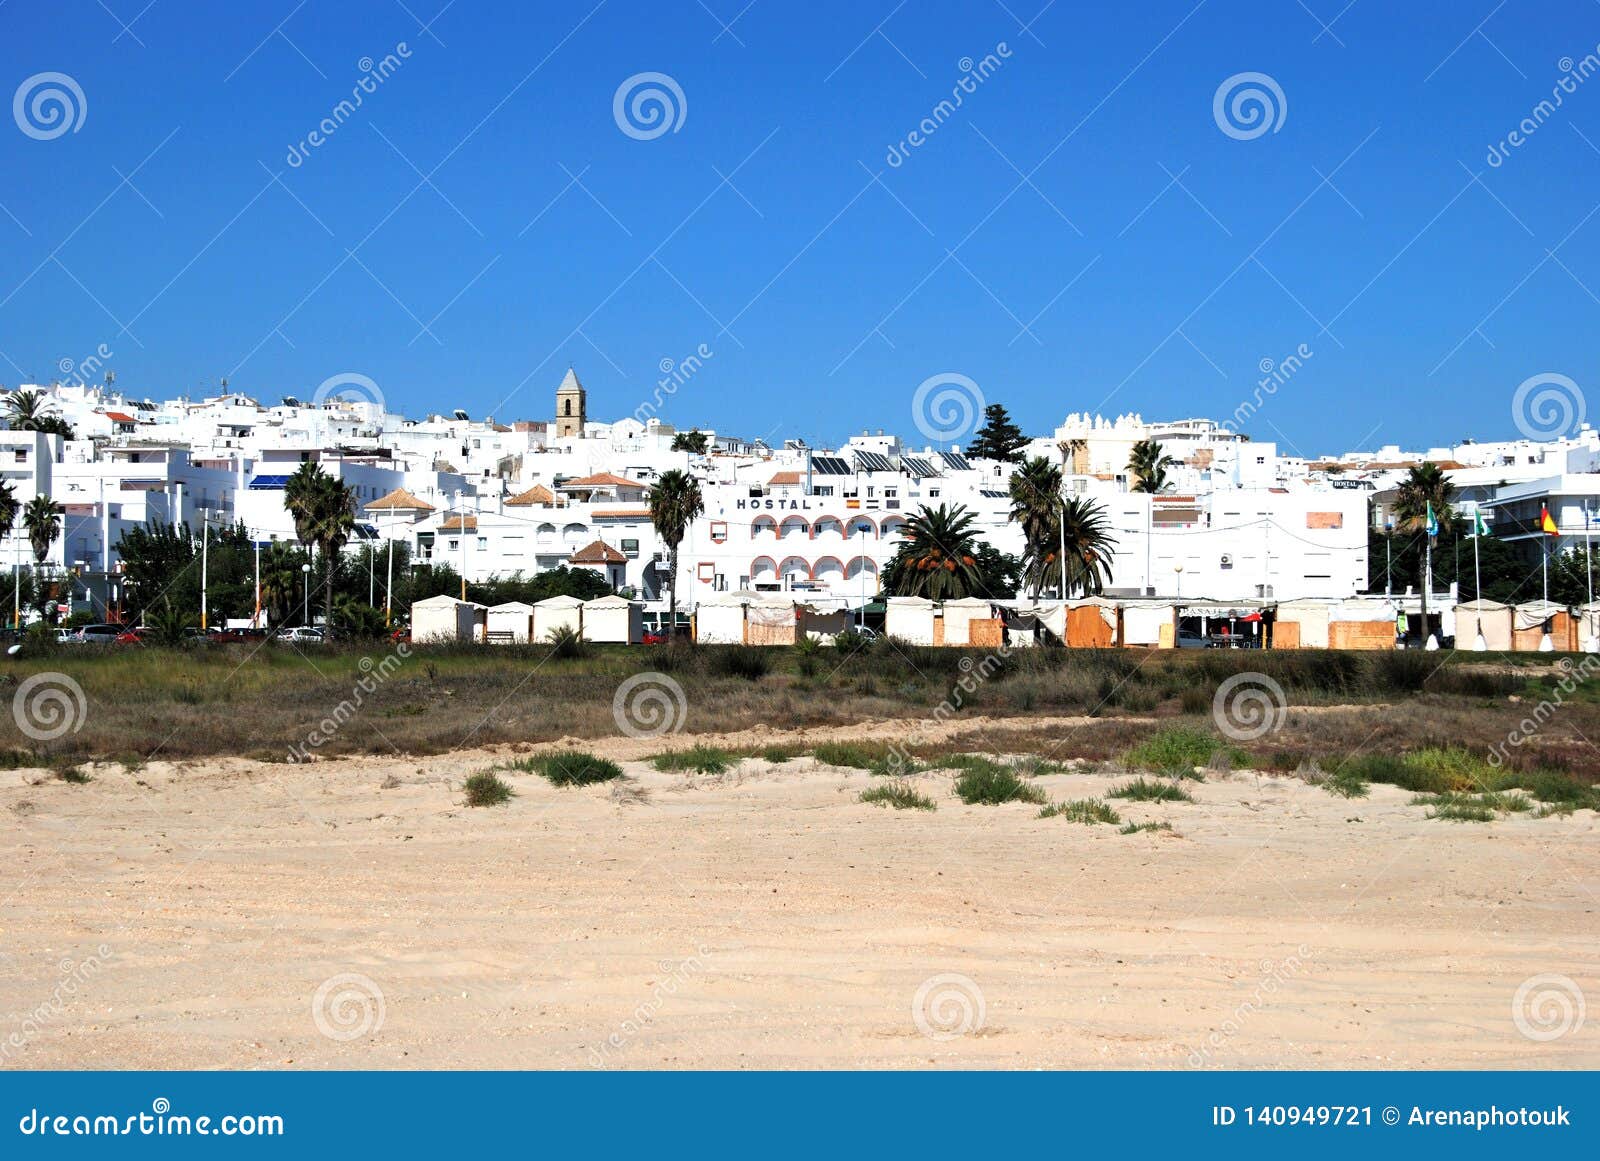 Beach and White Town, Conil De La Frontera. Editorial Image